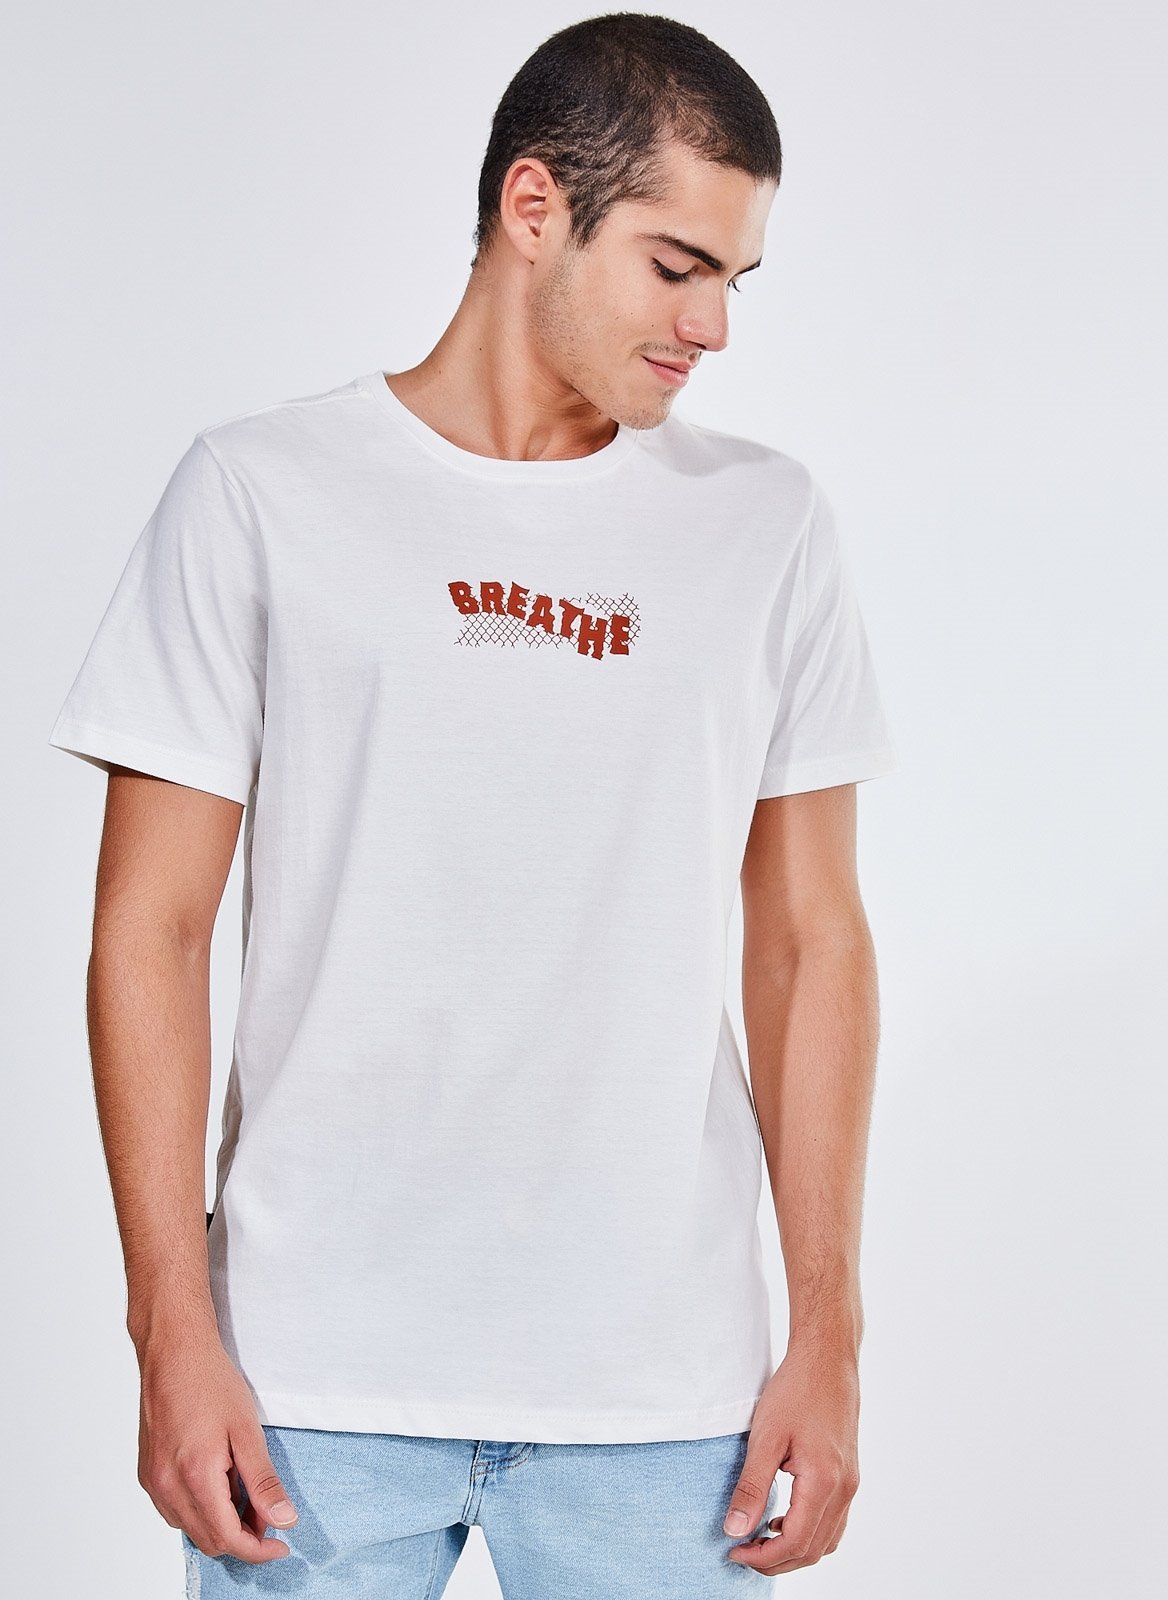 Camiseta Estampa Breathe